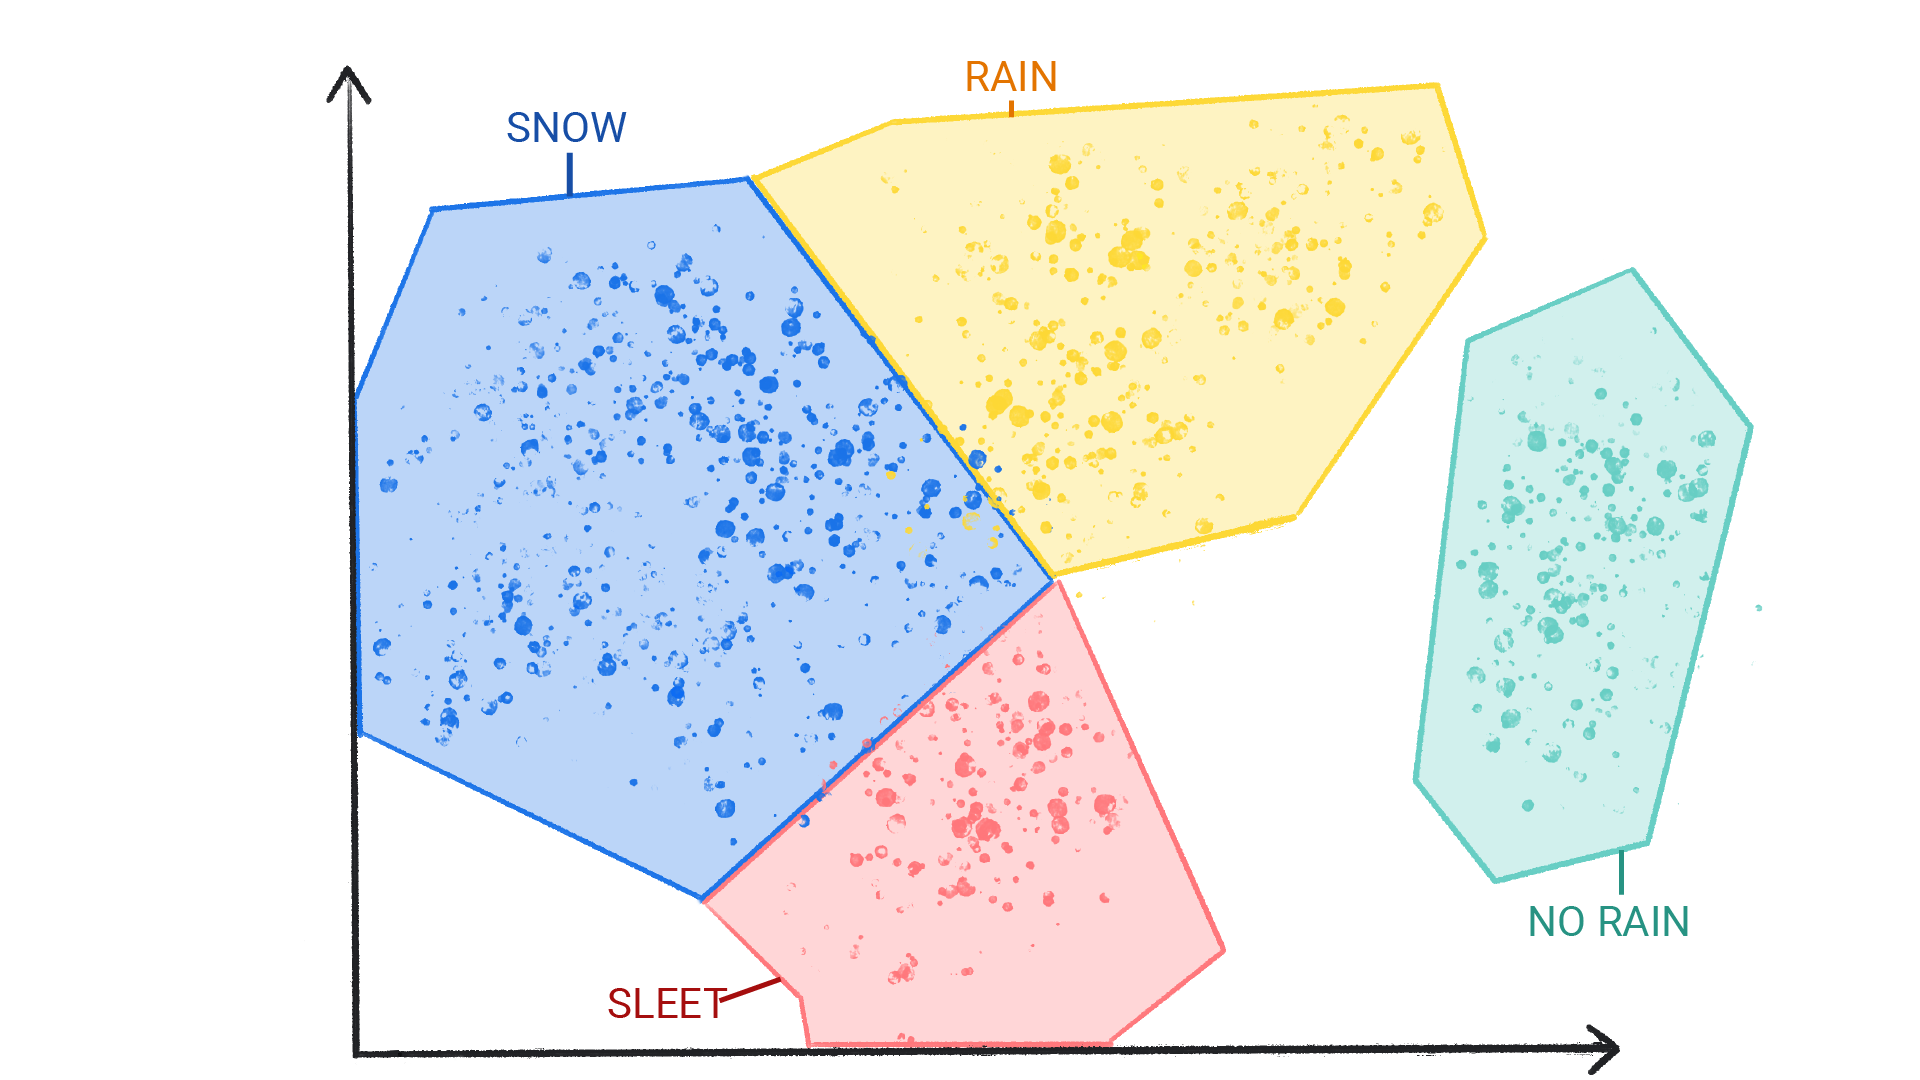 一张图片，其中以彩色圆点标记了雪、雨、冰雹和无雨，这些彩色圆点被封闭成一个形状，彼此相邻。